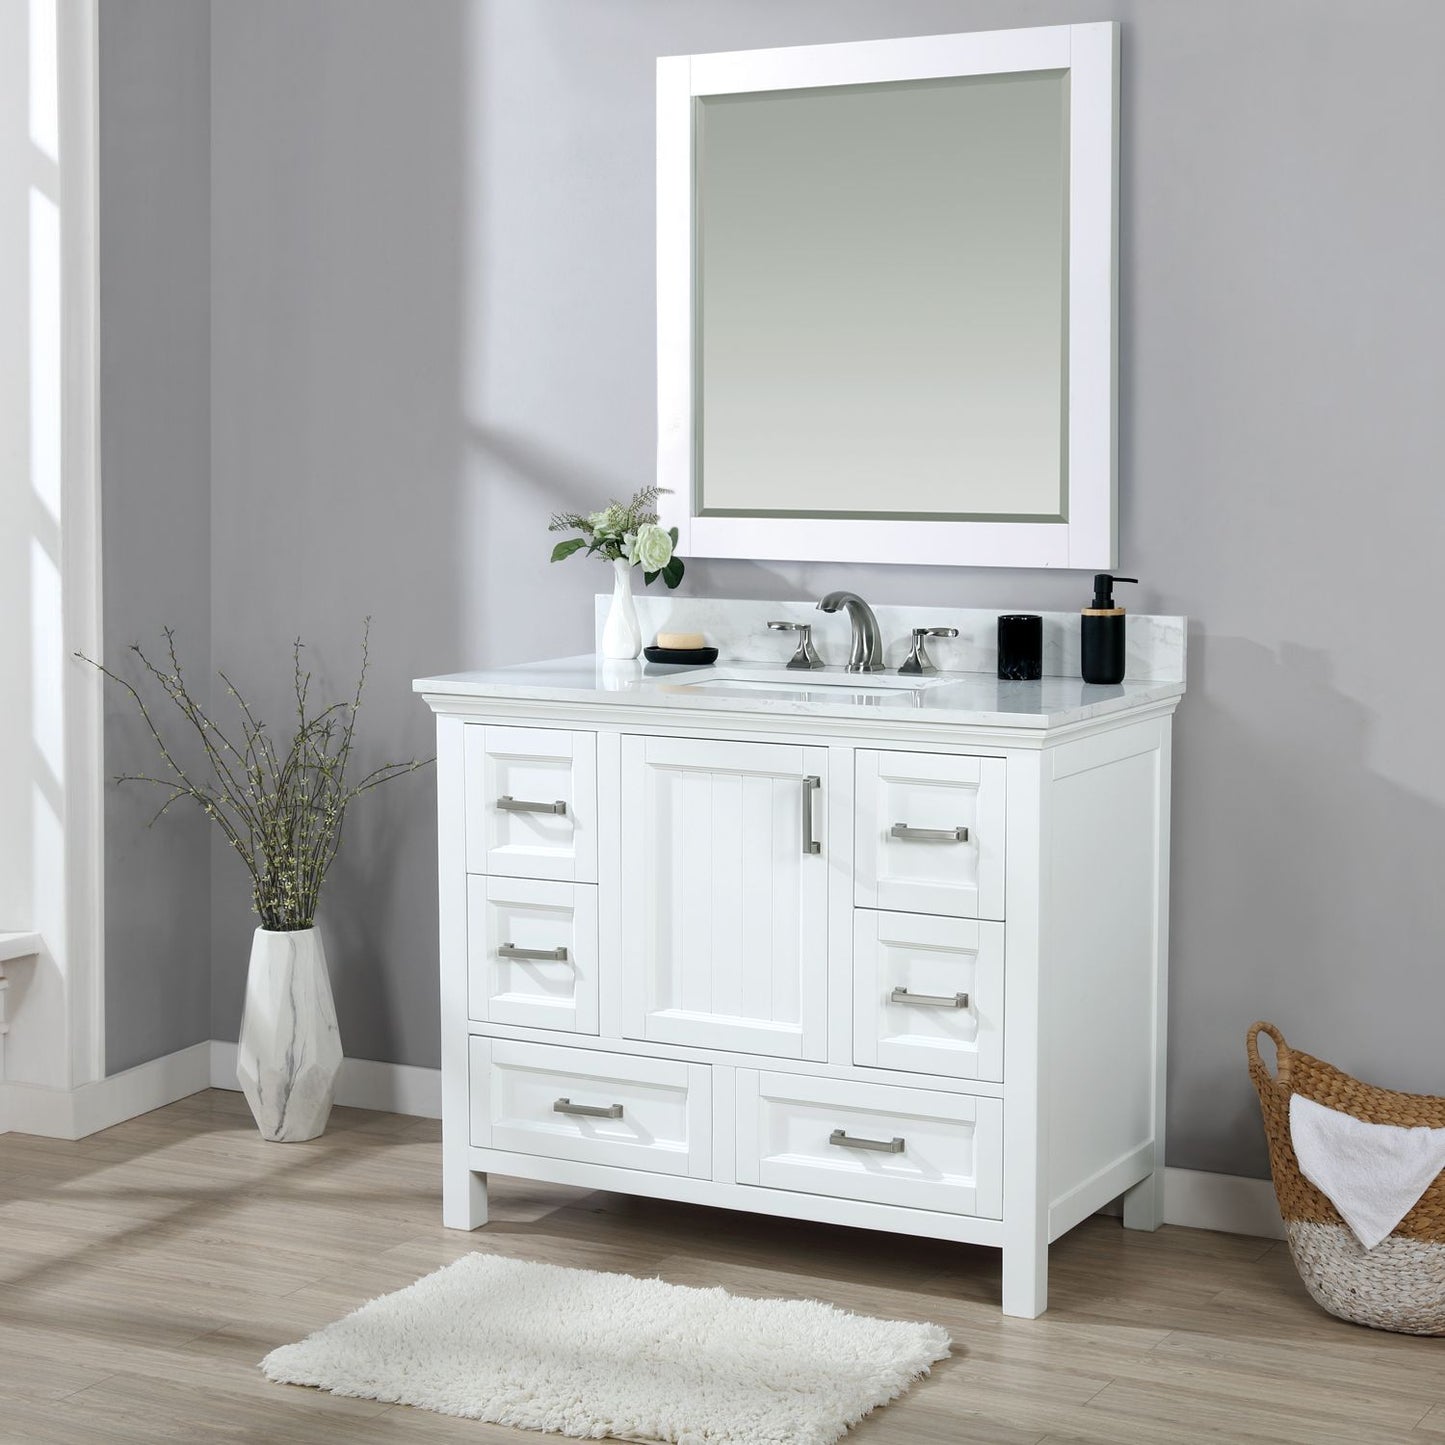 Altair Isla 42" Single Bathroom Vanity Set Countertop with Mirror - Luxe Bathroom Vanities